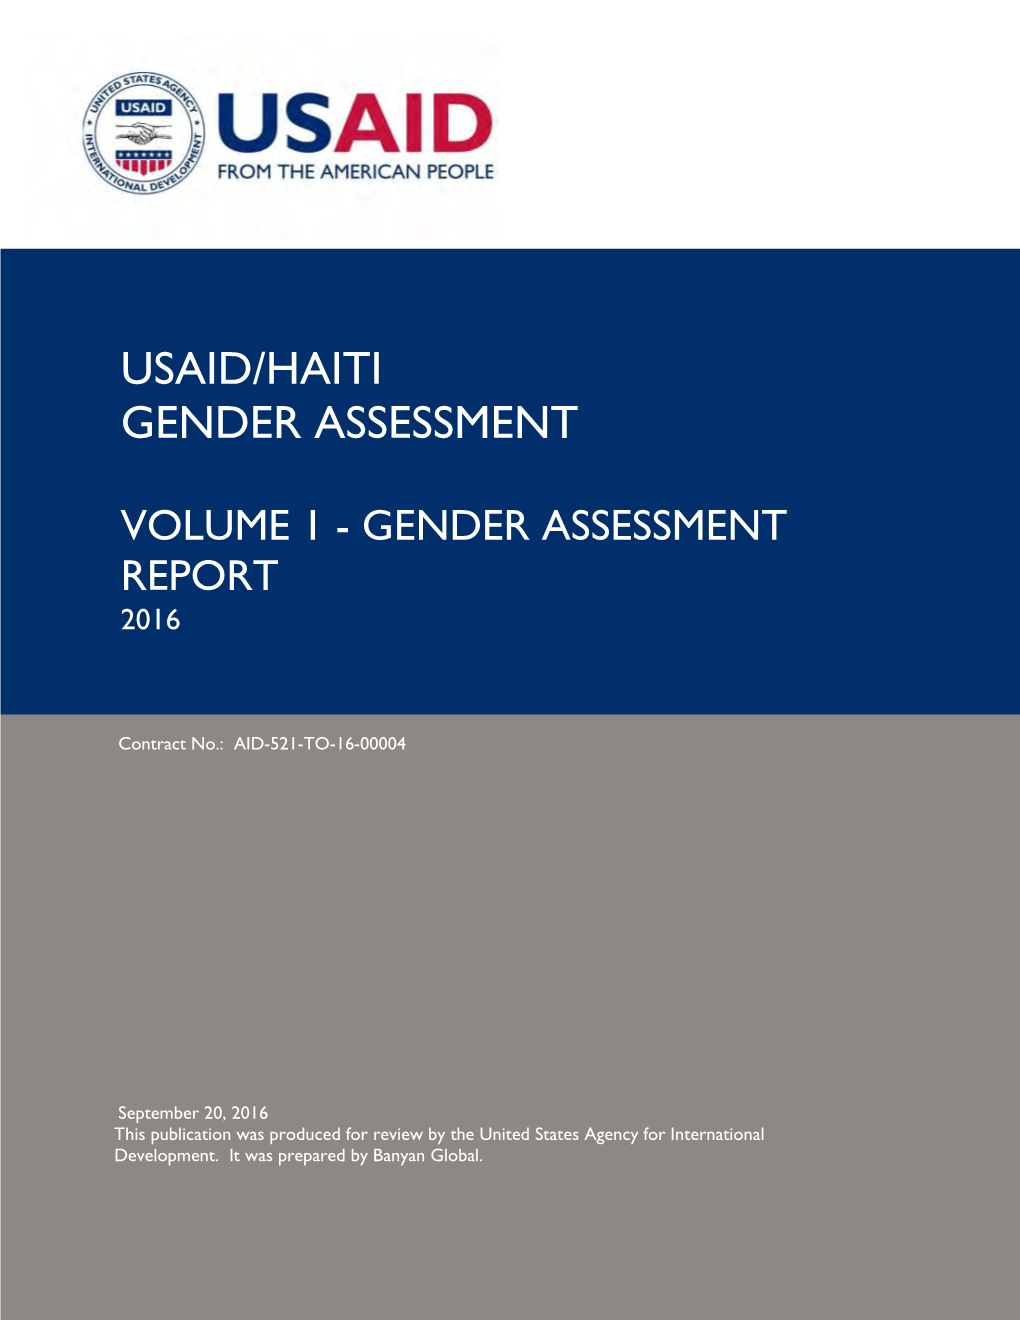 USAID/Haiti Gender Assessment, Volume I